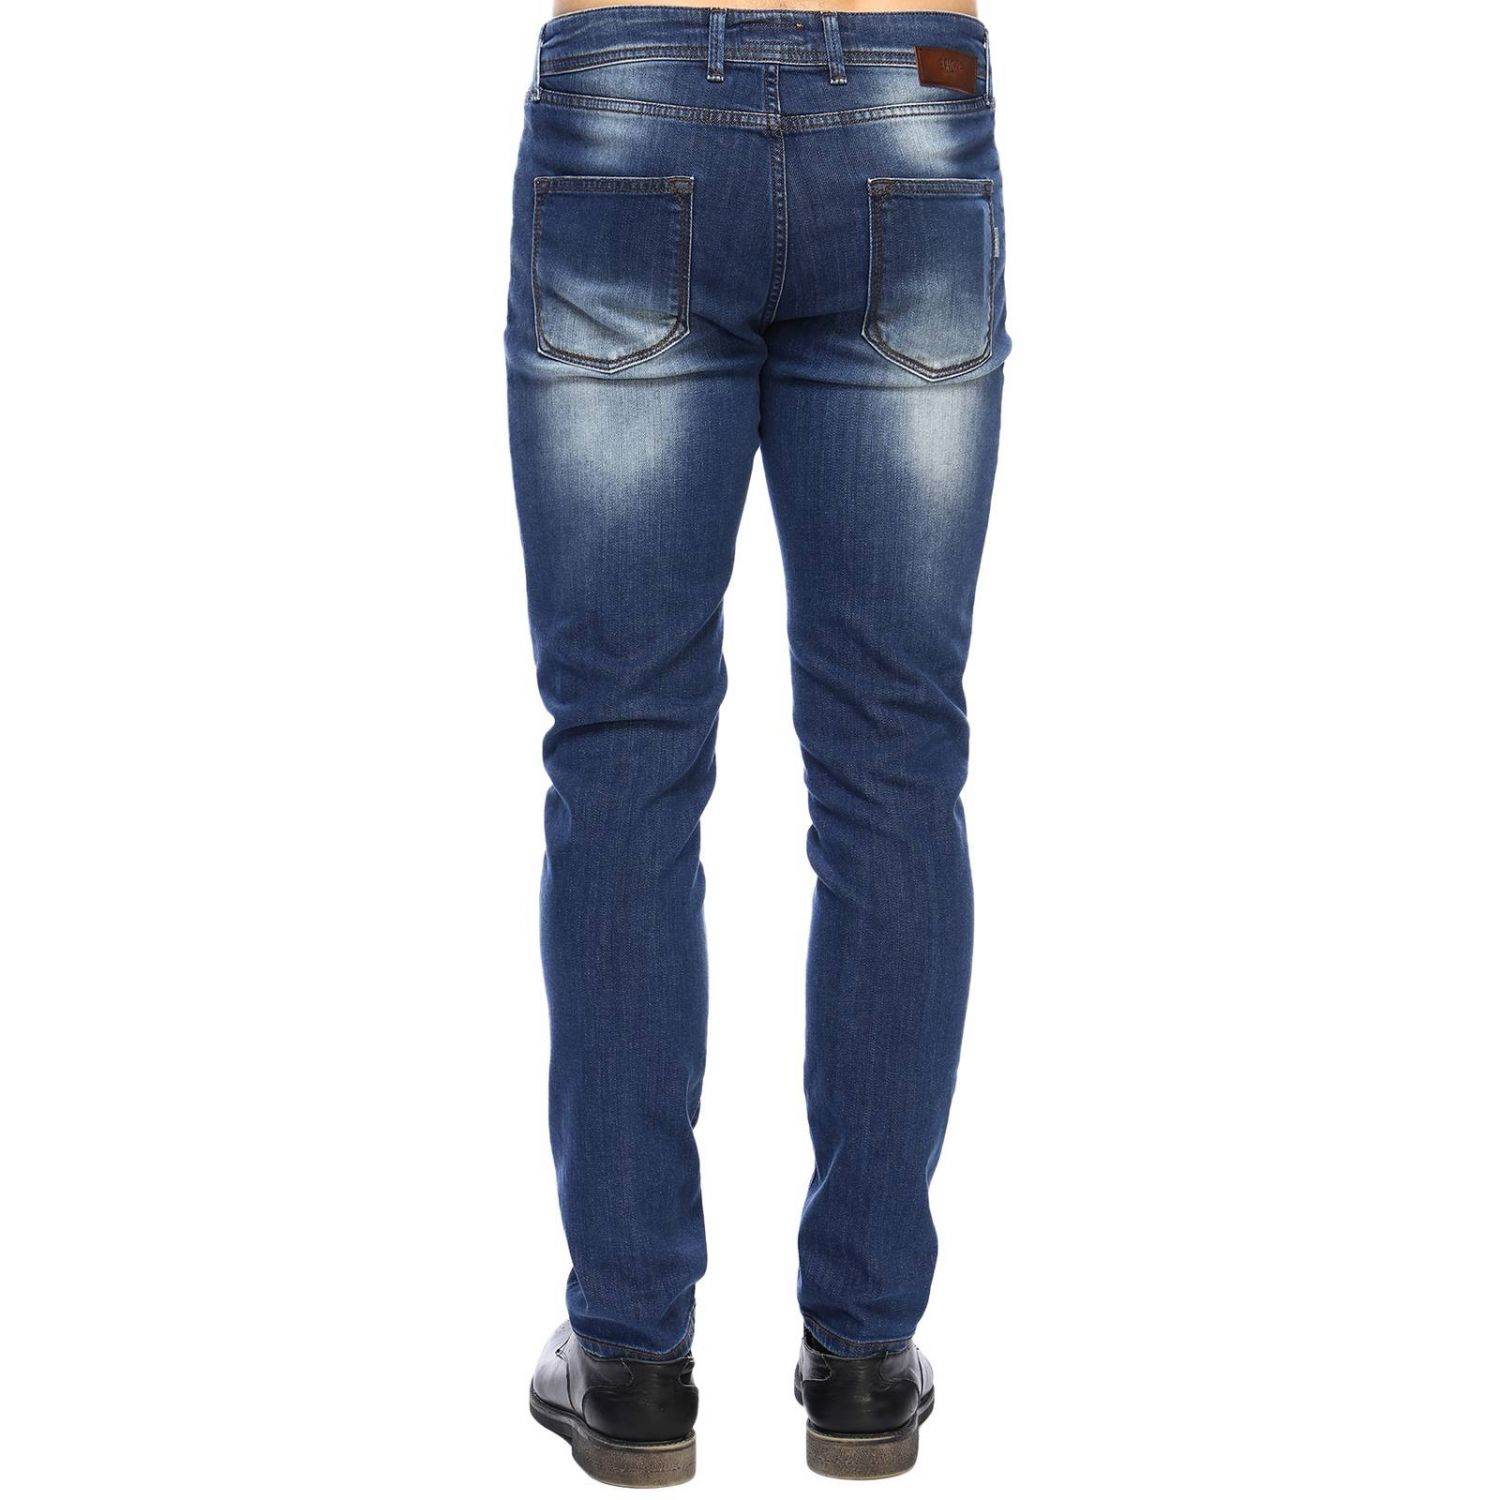 Briglia Outlet: Jeans for men - Denim | Jeans Briglia BG09 04816 GIGLIO.COM